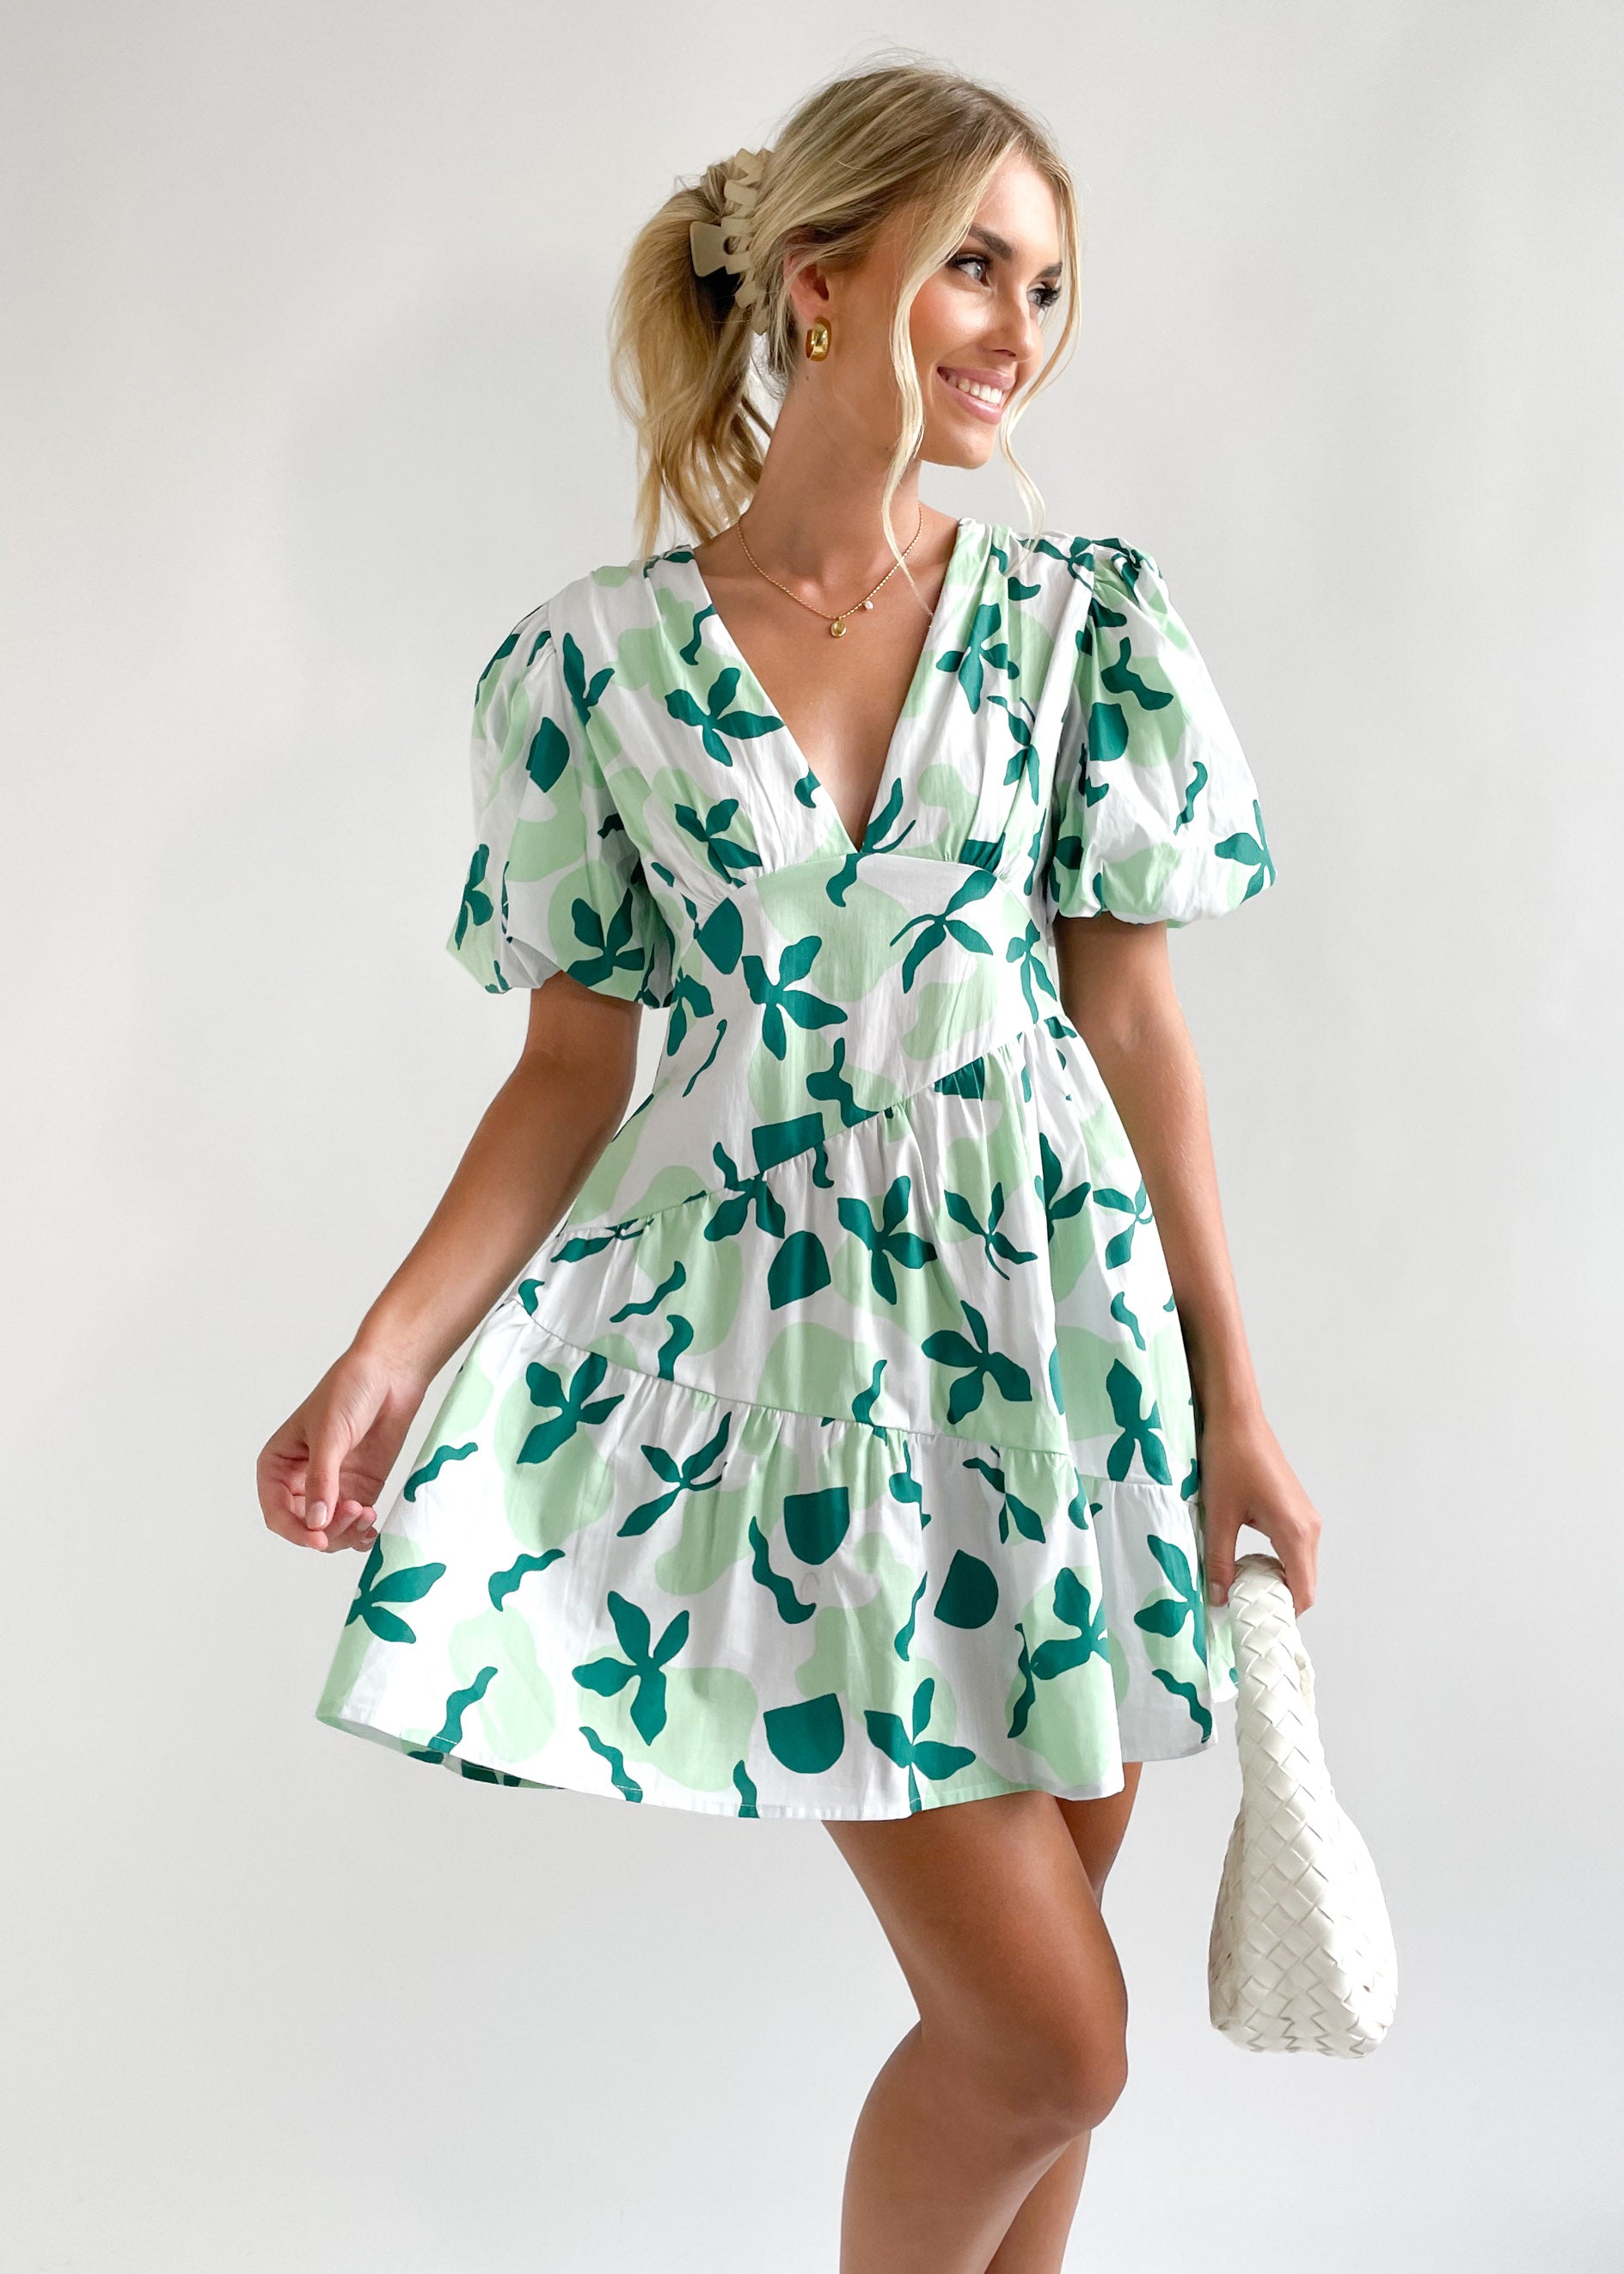 Darbee Dress - Mali Green